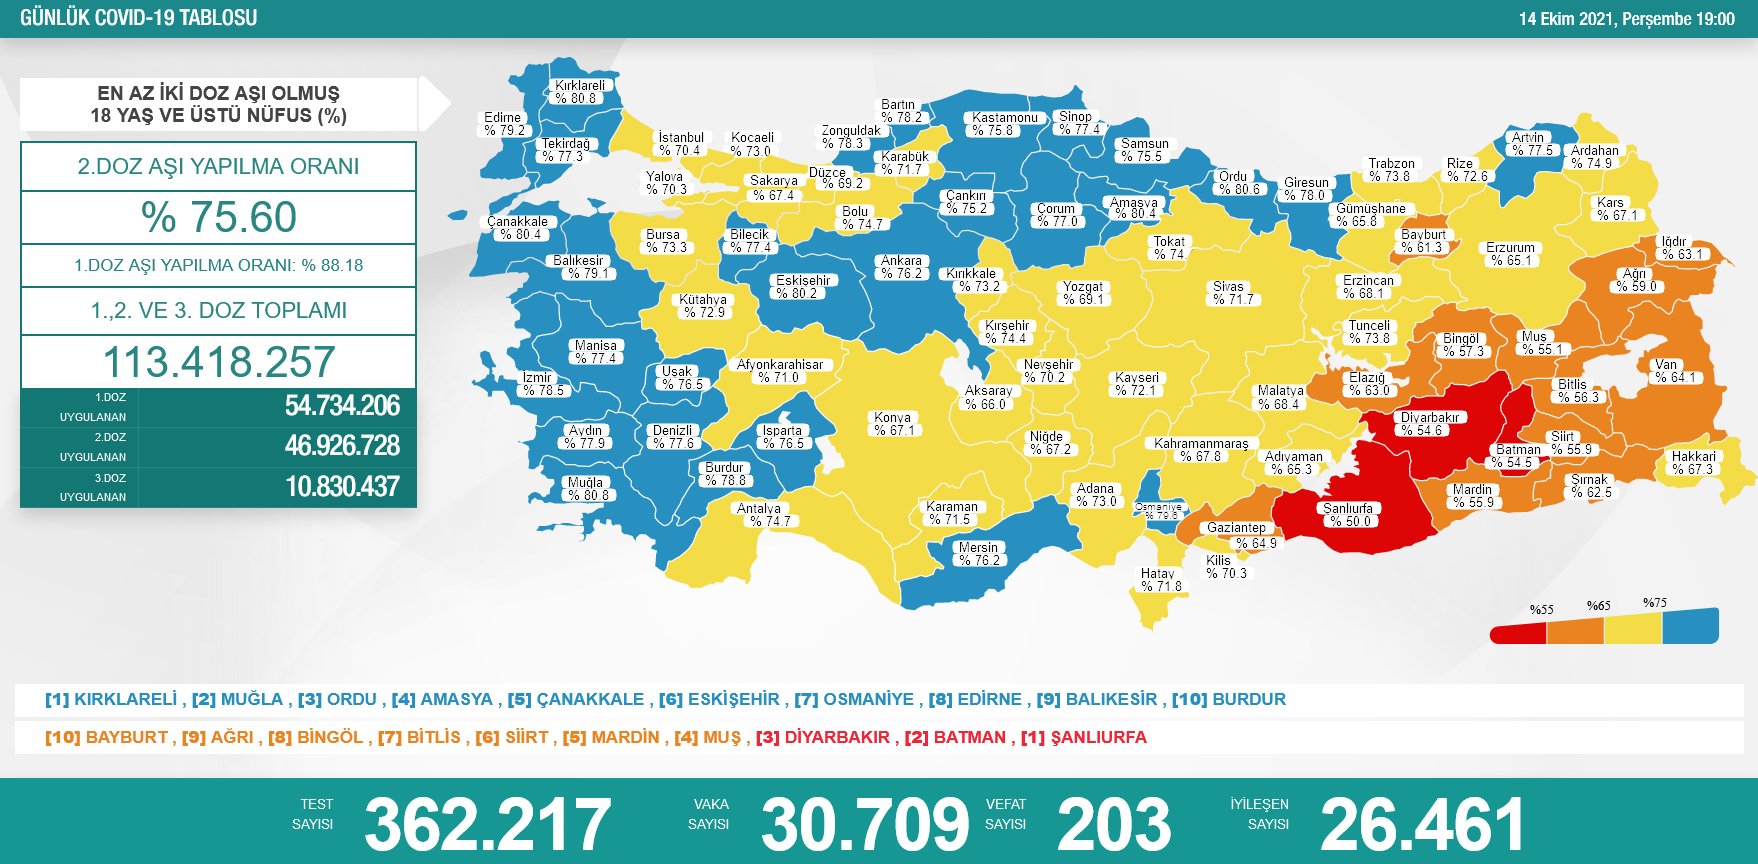 Sağlık Bakanlığı 14 Ekim 2021 Türkiye Koronavirüs Tablosu Açıkladı